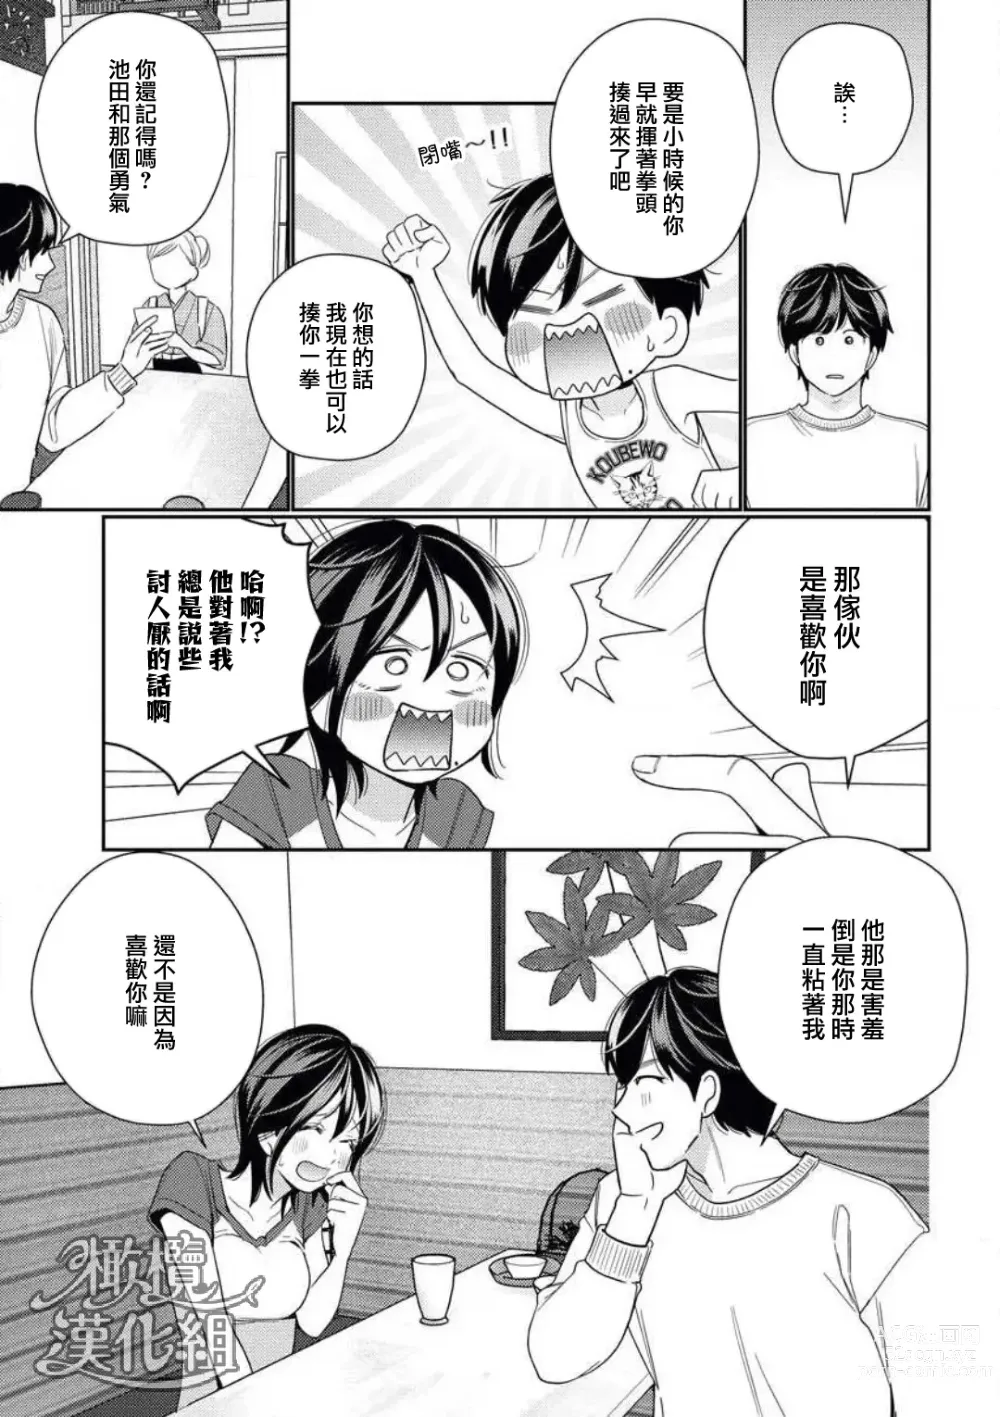 Page 15 of manga 青梅竹马难以攻陷被小黄话（※正当工作需求）玩弄一番